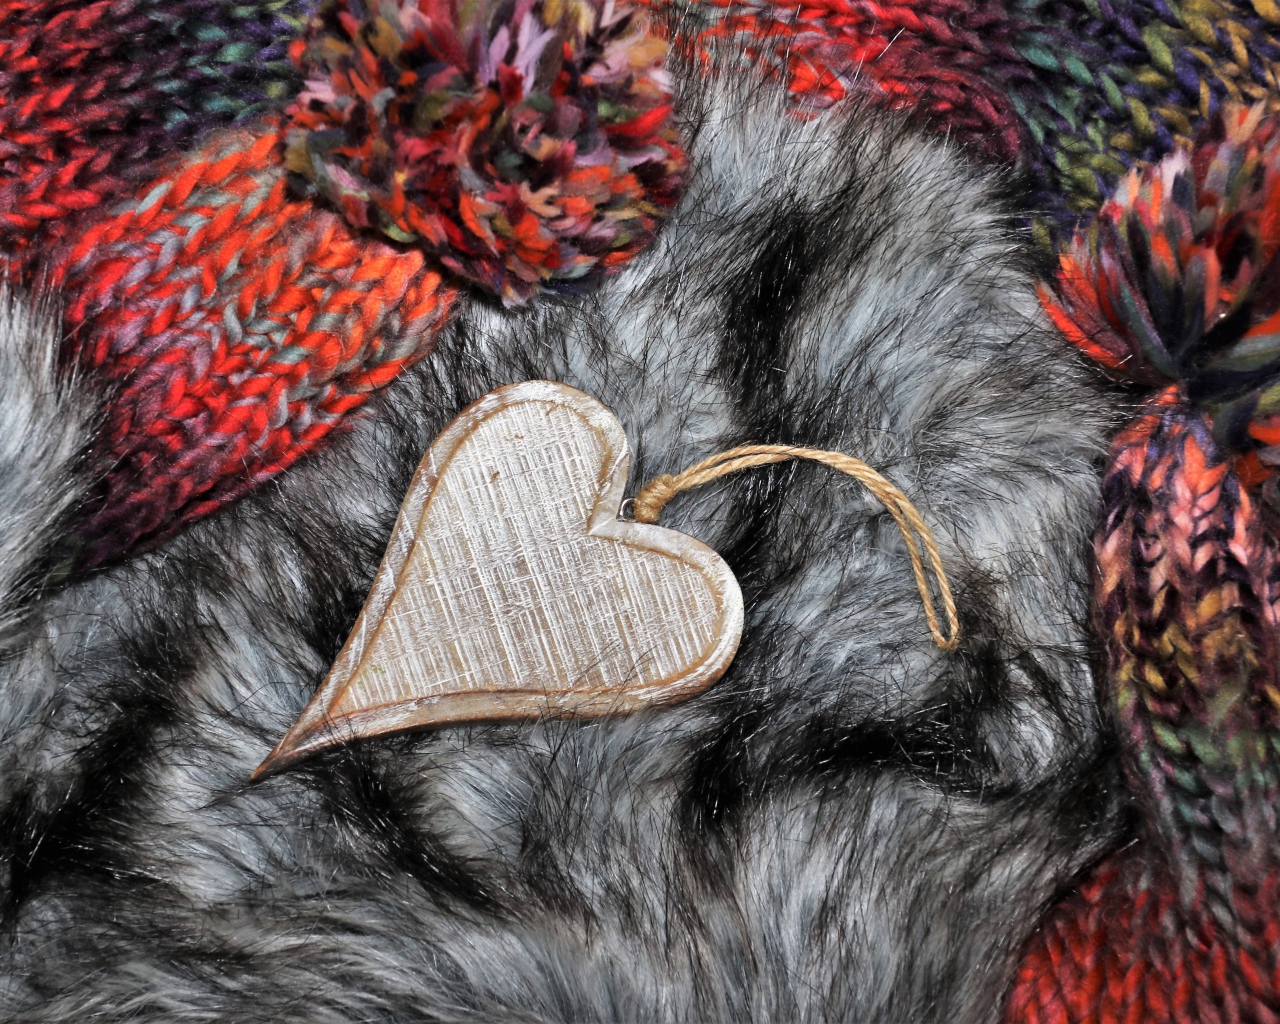 Wooden heart lies on a fur hat